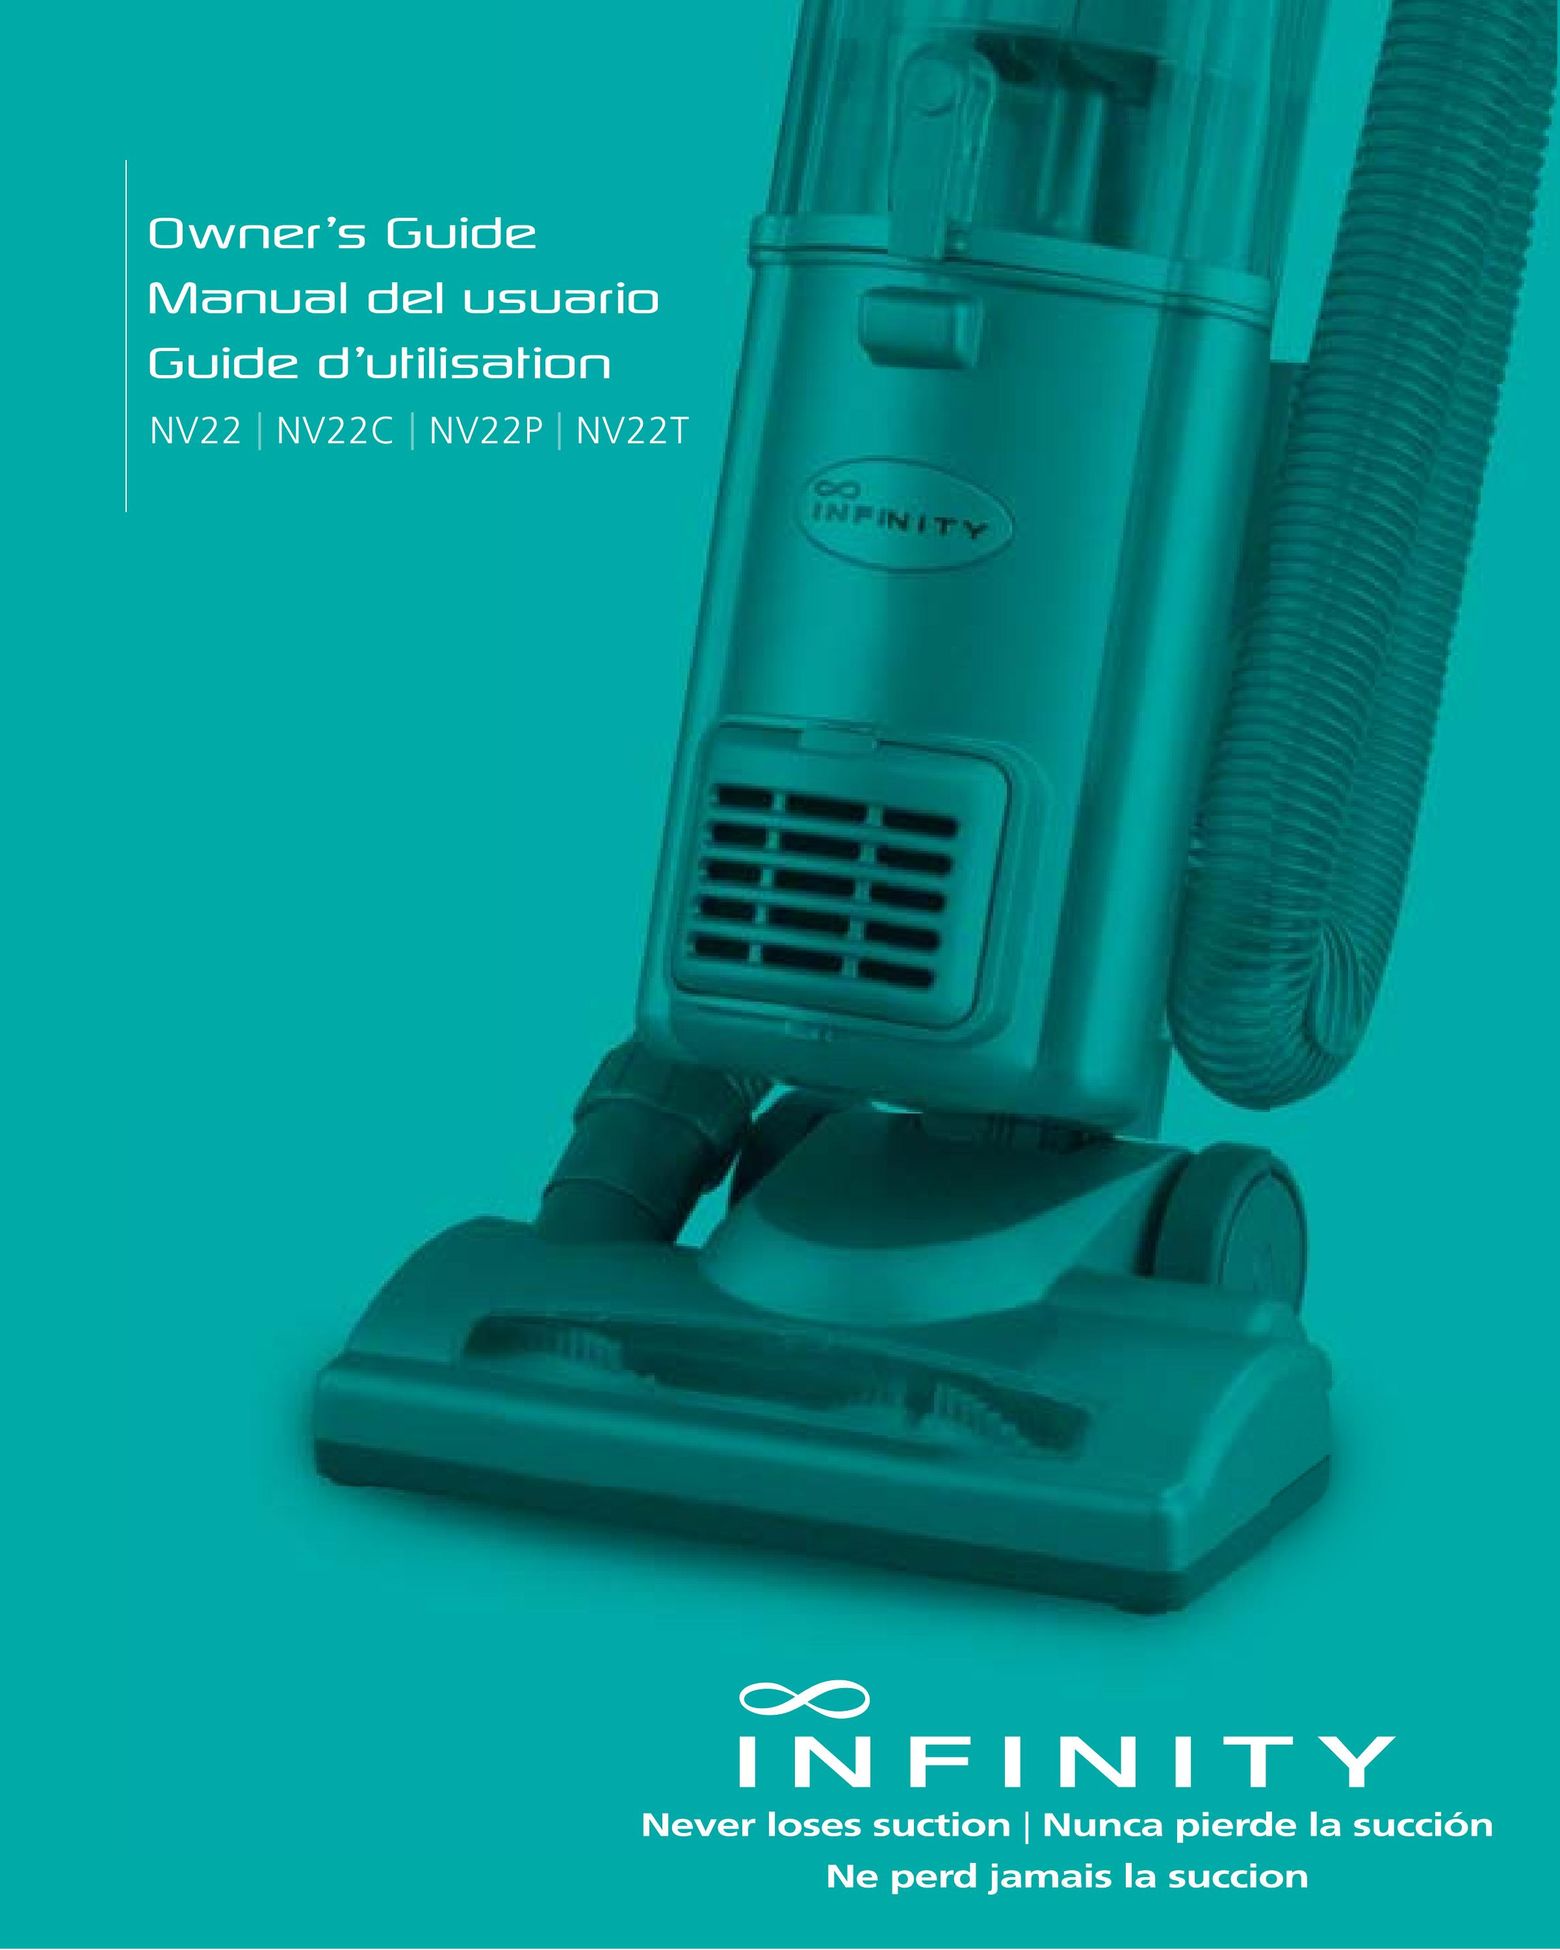 Infinity NV22P Vacuum Cleaner User Manual